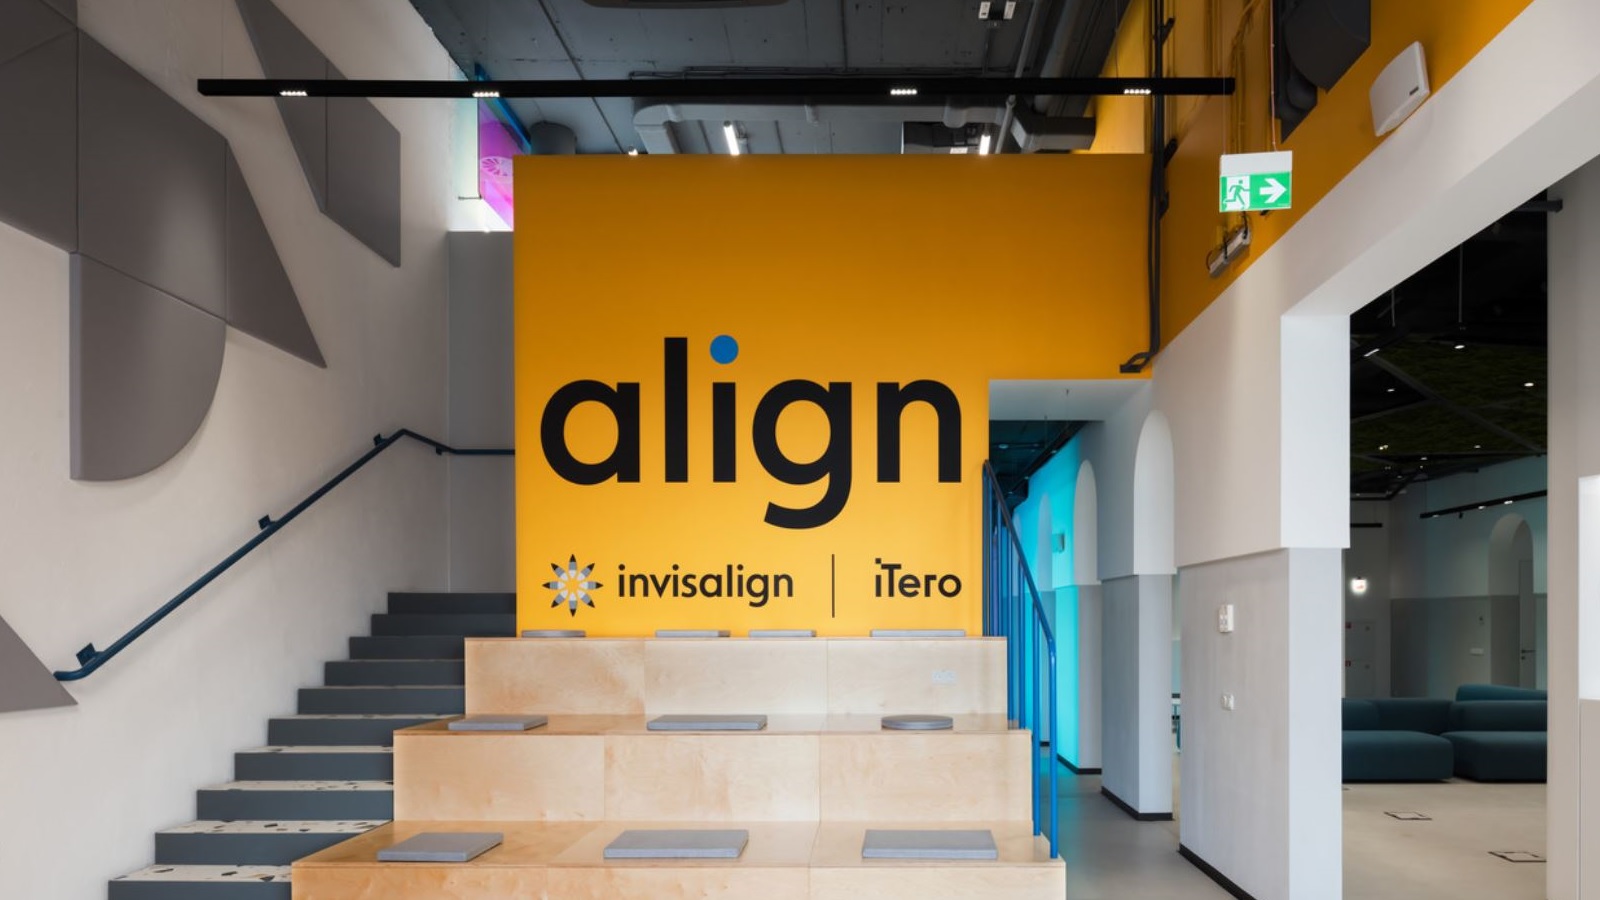 AlignTech Solutions LLC